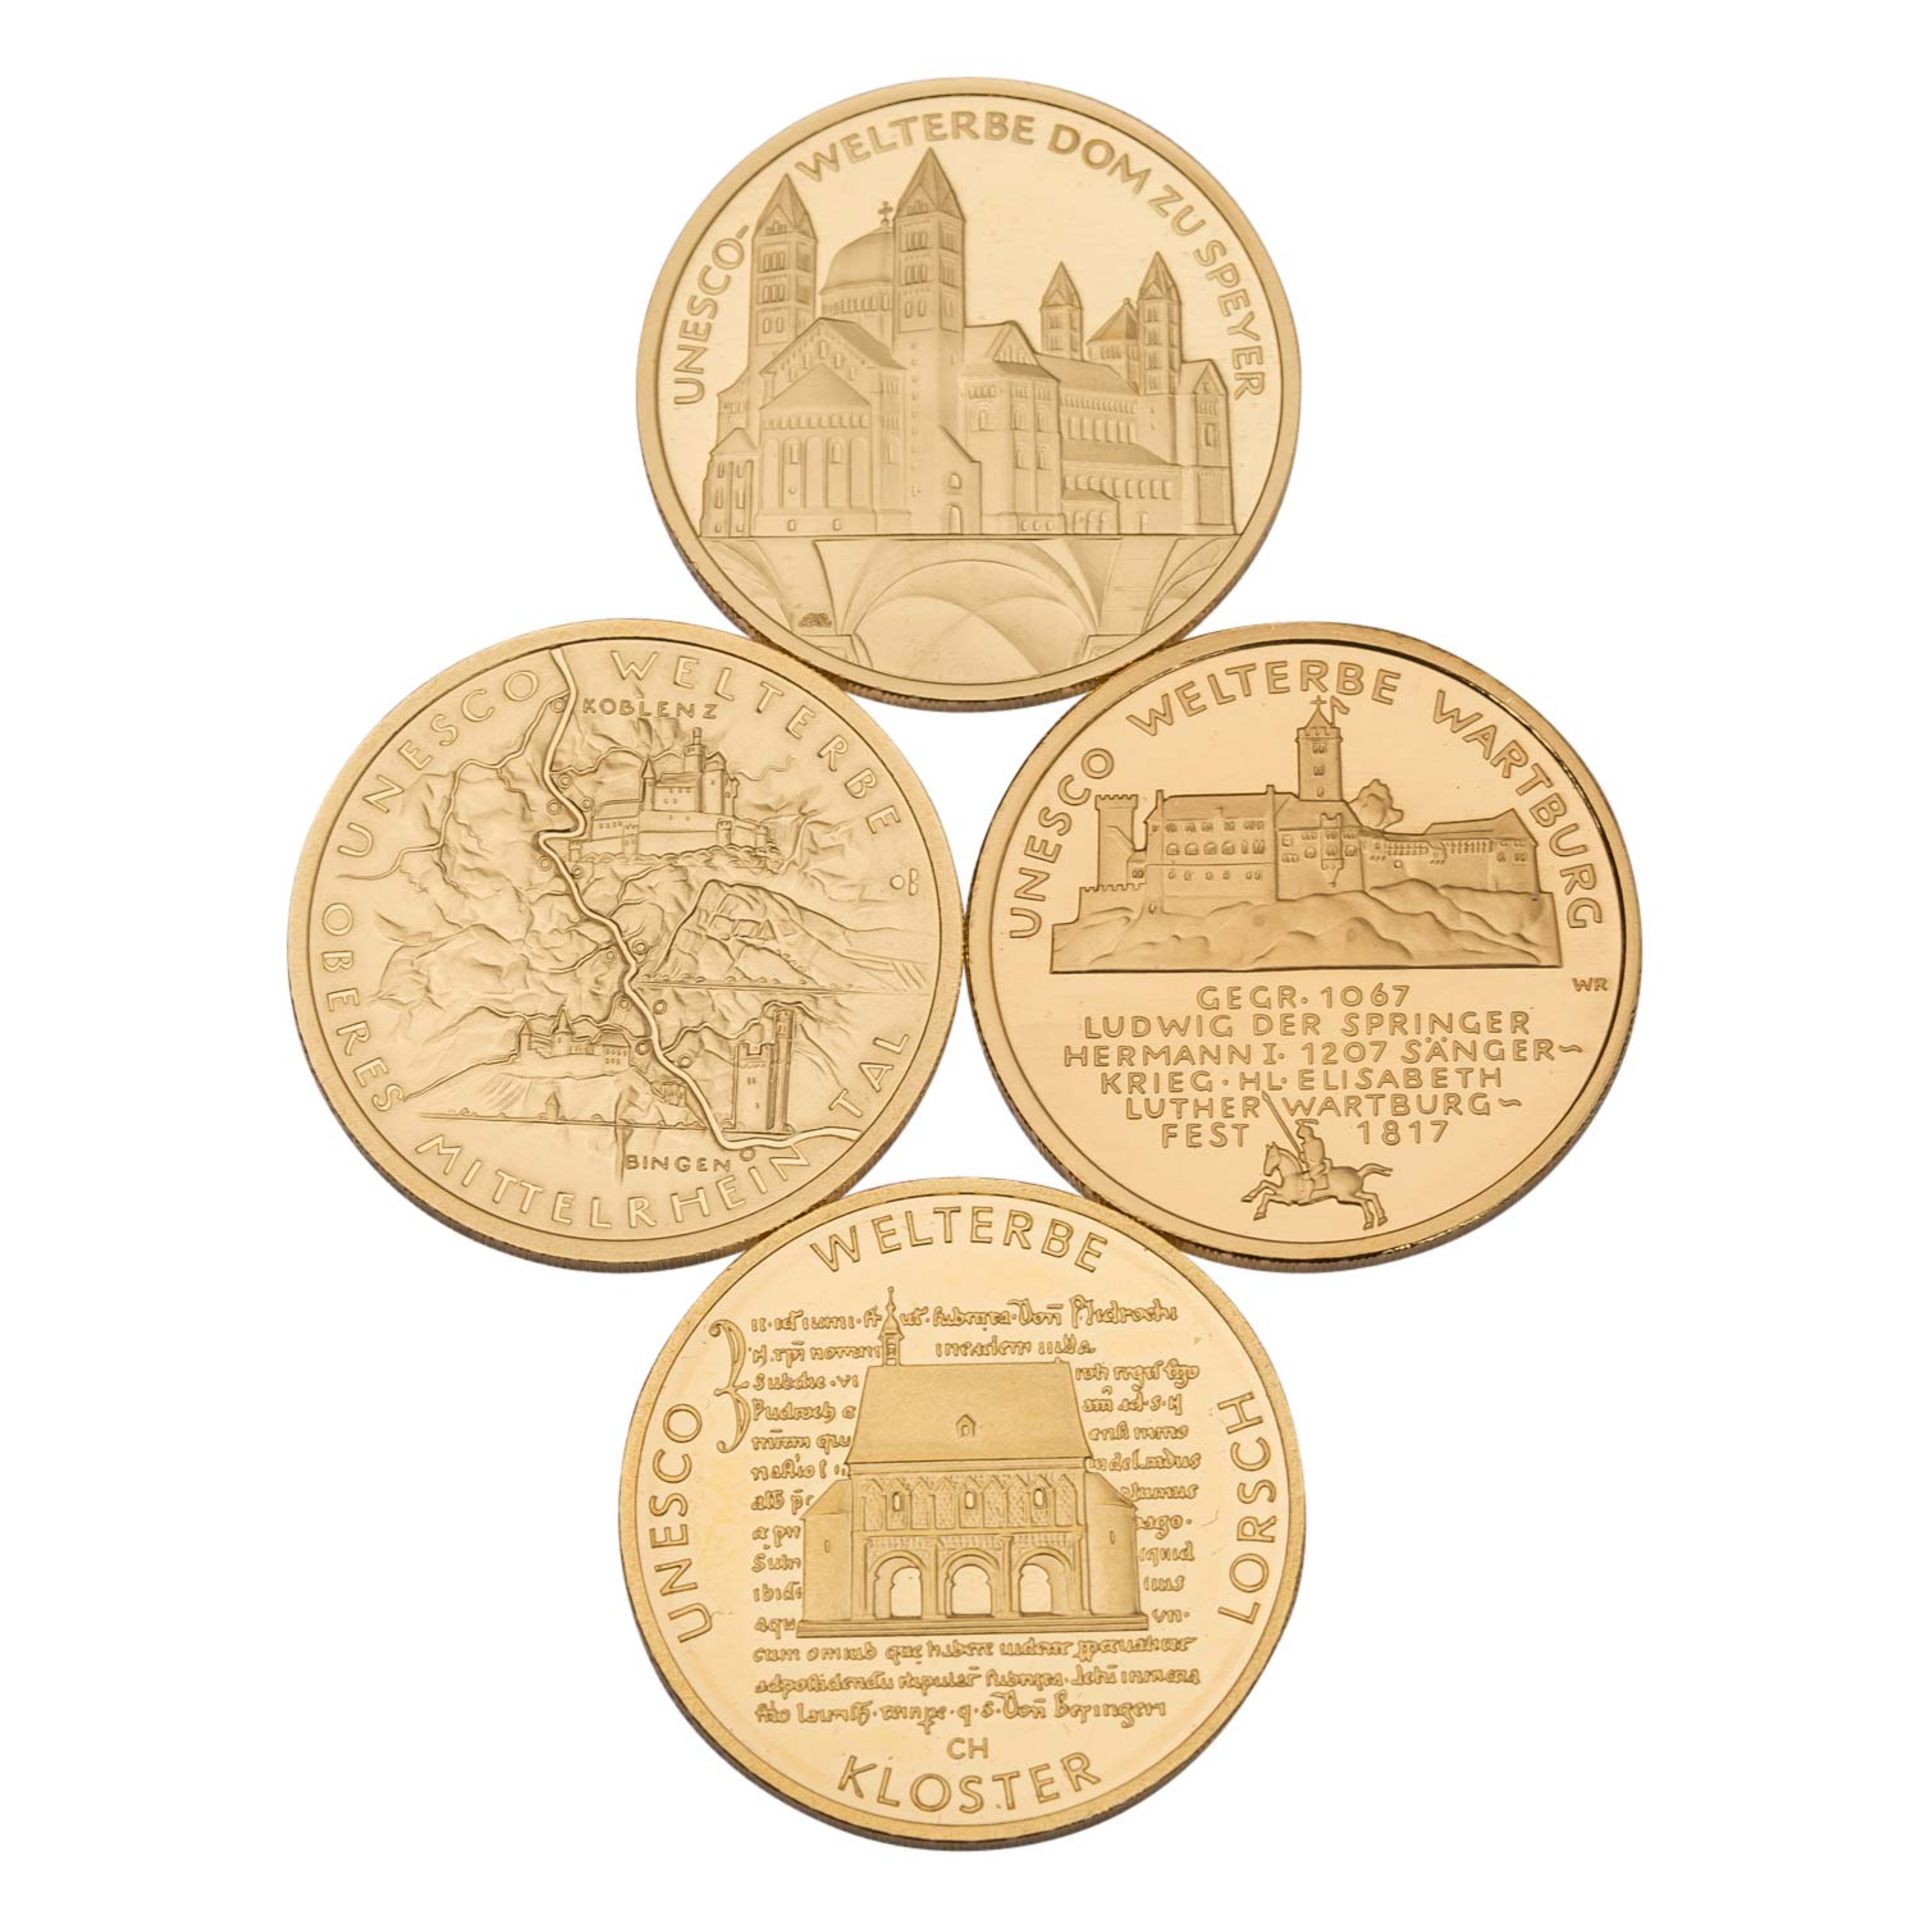 BRD /GOLD-Lot mit 4x 100€ Gedenkmünzen à 1/2 Unze - Image 2 of 2